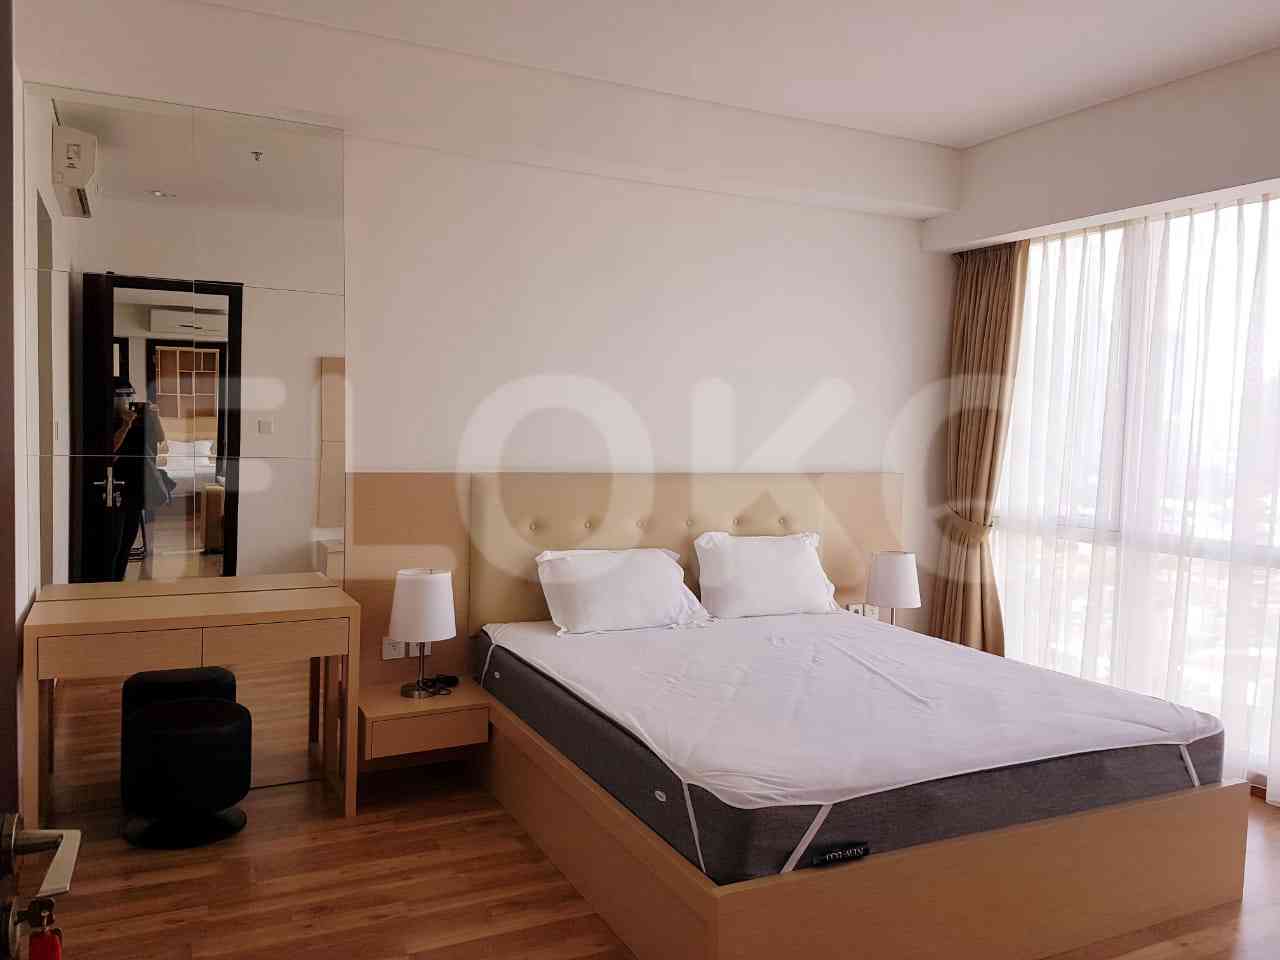 3 Bedroom on 38th Floor for Rent in Sky Garden - fse7b4 2